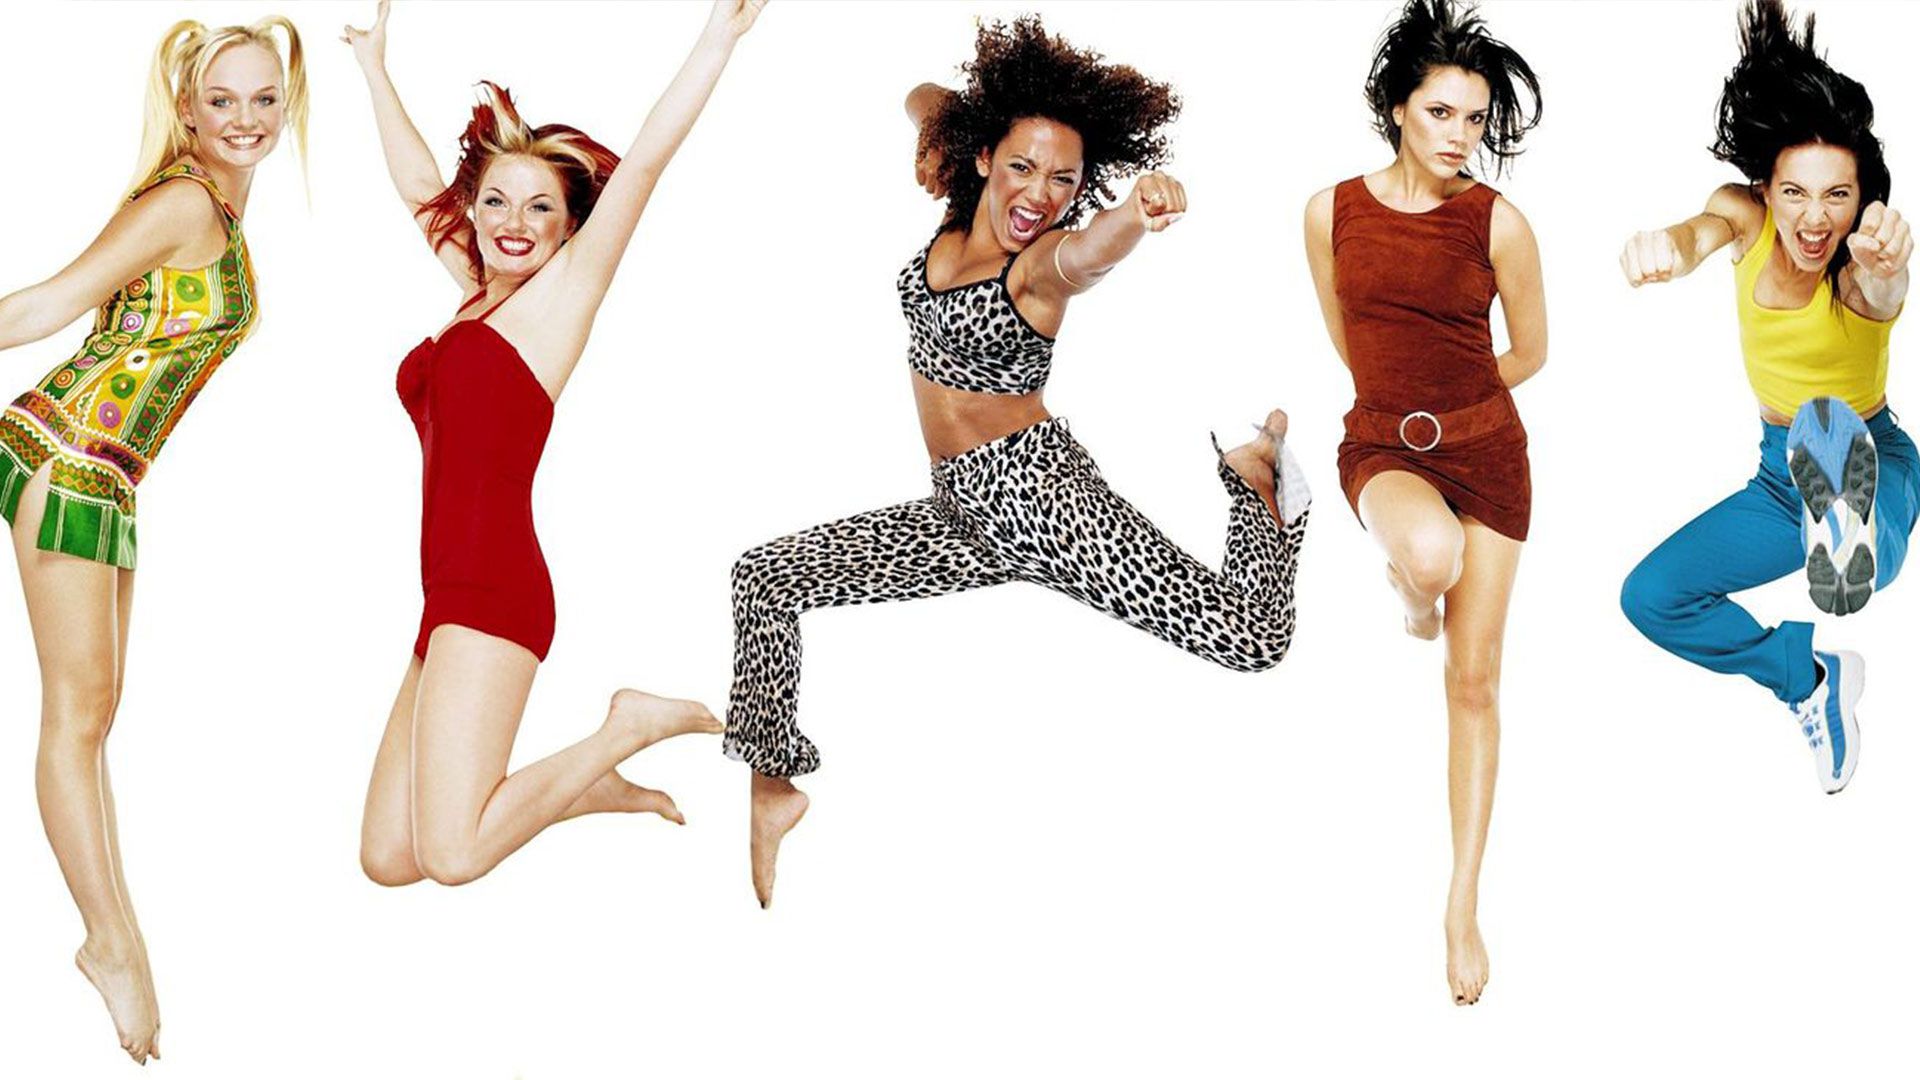 Wannabe Des Spice Girls Revisite Pour La Bonne Cause